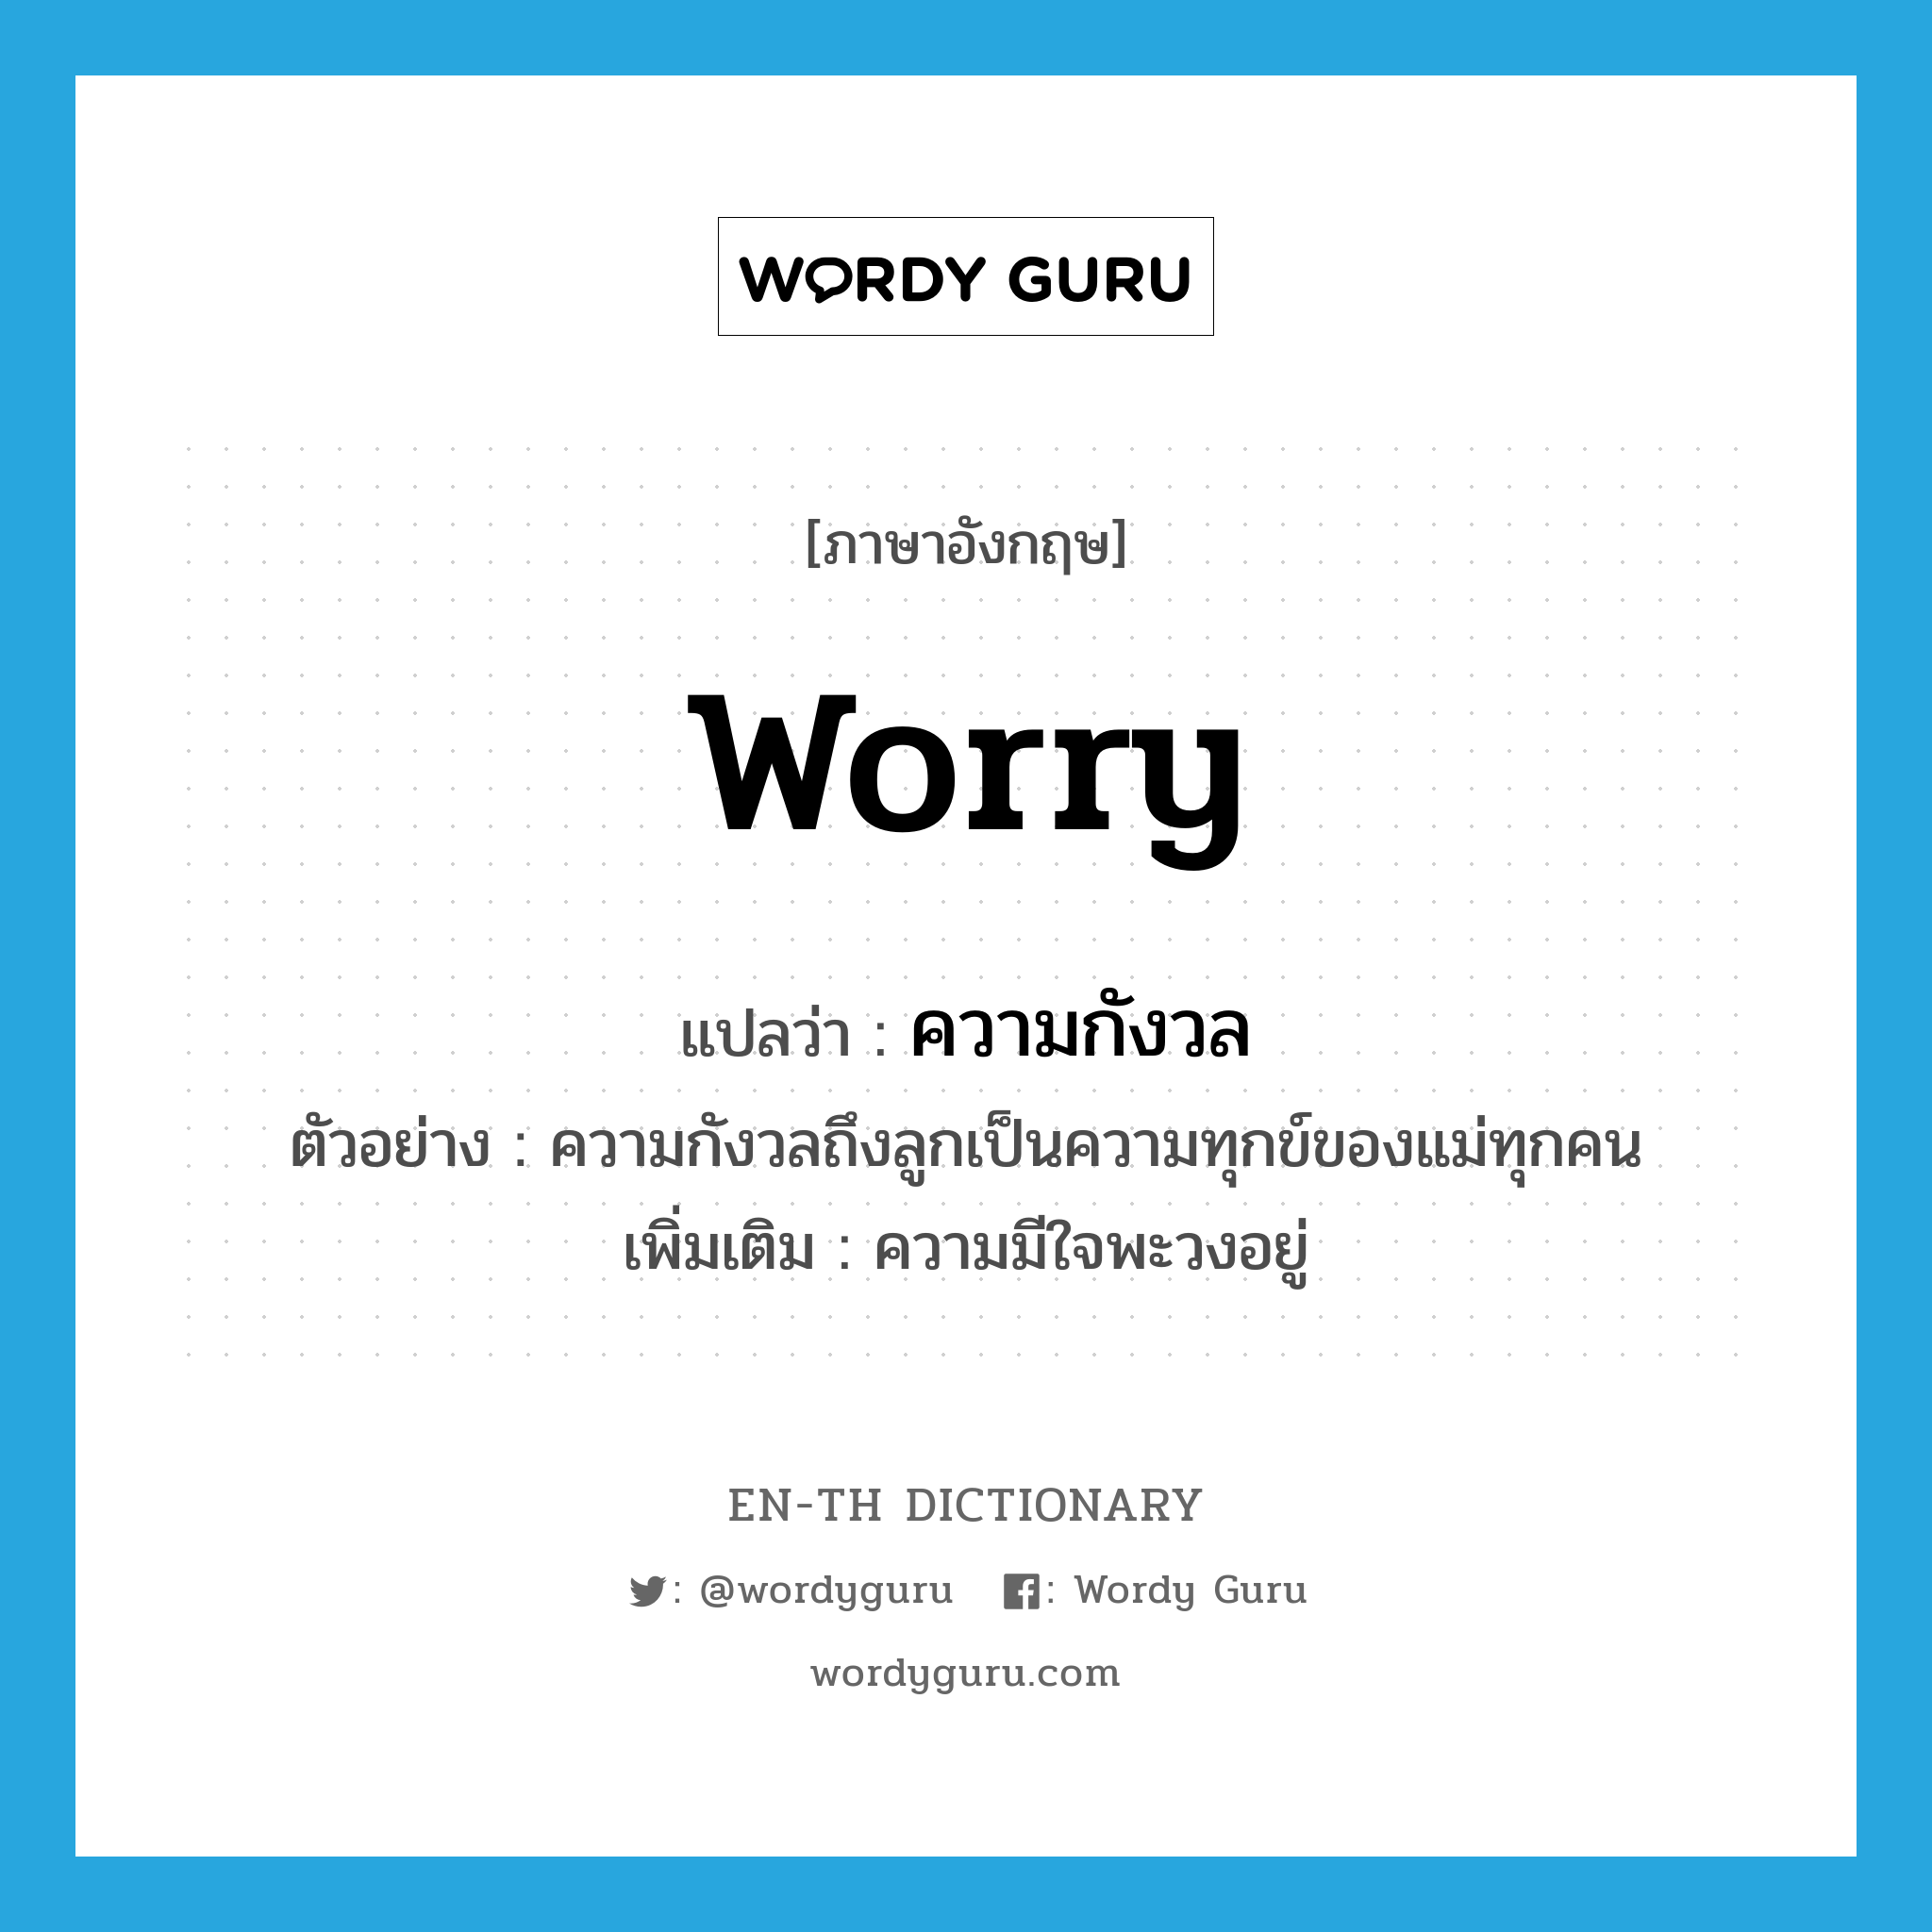 ความกังวล ภาษาอังกฤษ?, คำศัพท์ภาษาอังกฤษ ความกังวล แปลว่า worry ประเภท N ตัวอย่าง ความกังวลถึงลูกเป็นความทุกข์ของแม่ทุกคน เพิ่มเติม ความมีใจพะวงอยู่ หมวด N